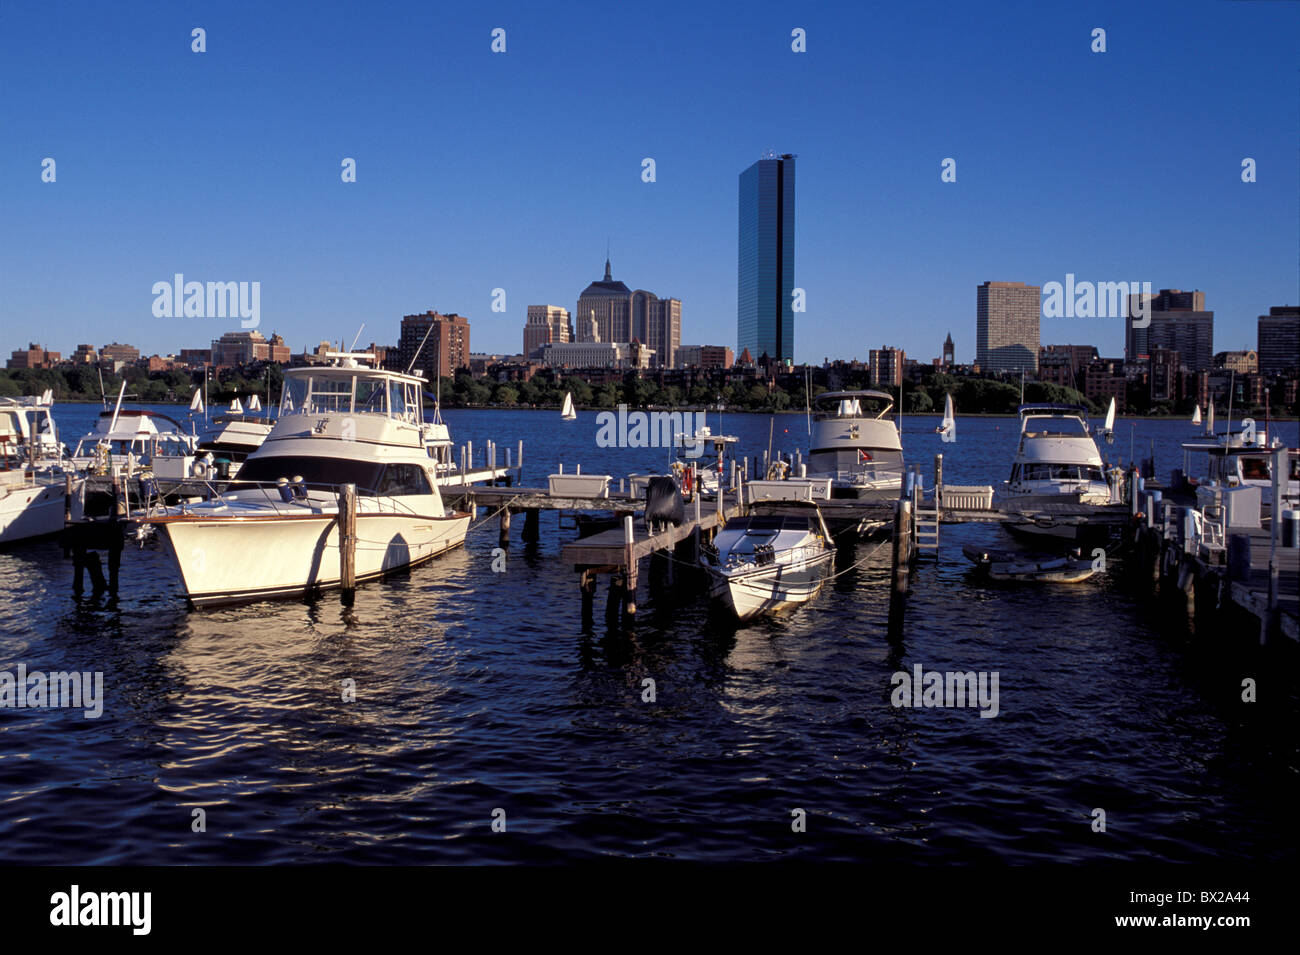 James River America Boston Massachusetts États-Unis Amérique du Nord USA bateaux port Banque D'Images